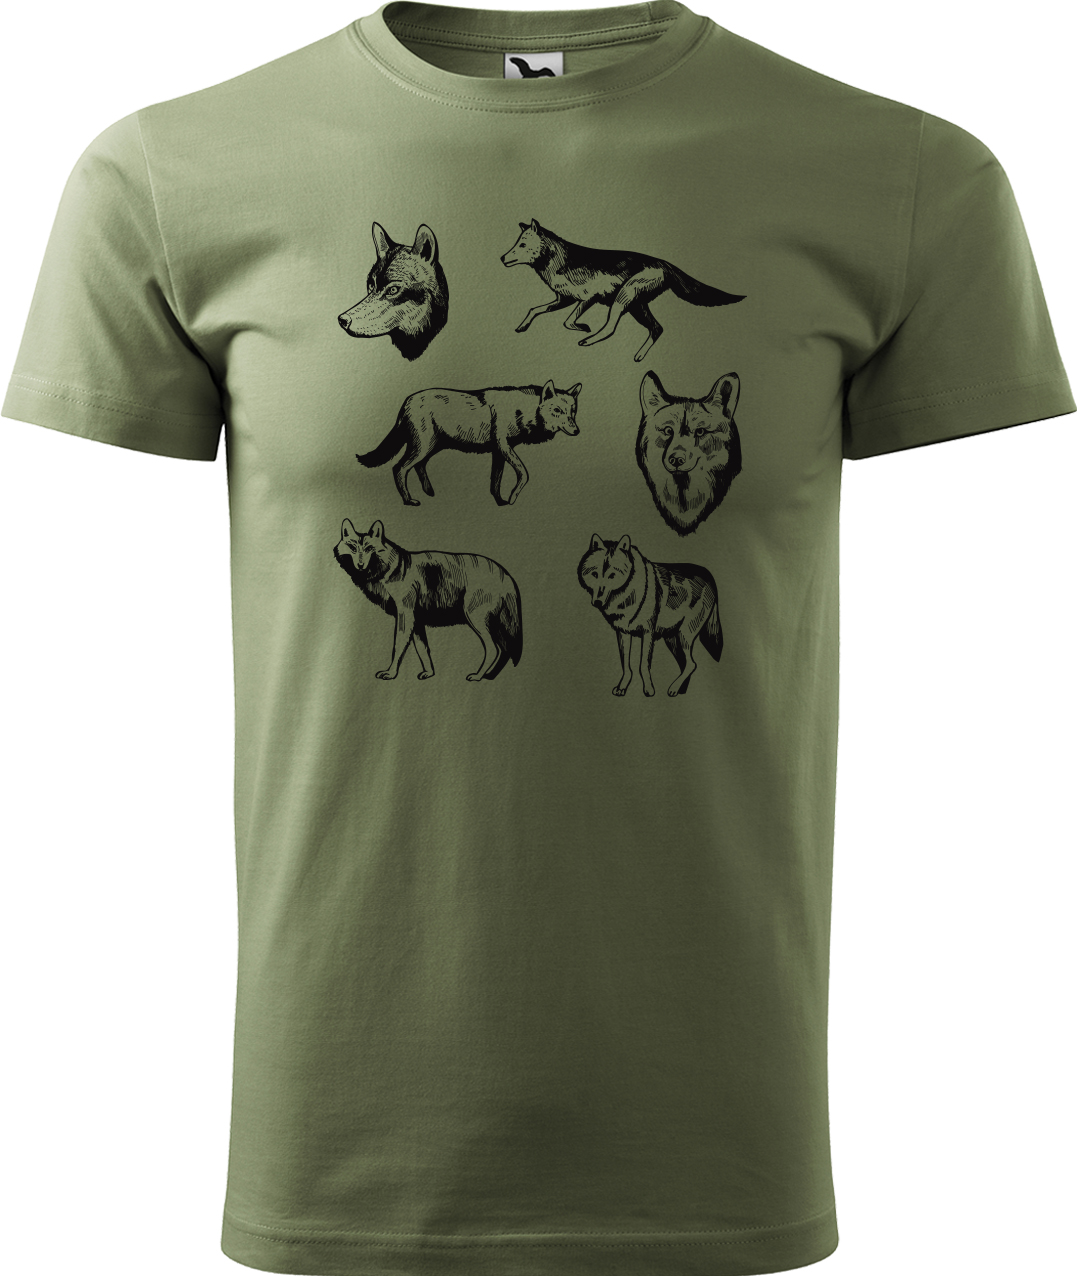 Pánské tričko s vlkem - Vlci Velikost: M, Barva: Světlá khaki (28), Střih: pánský